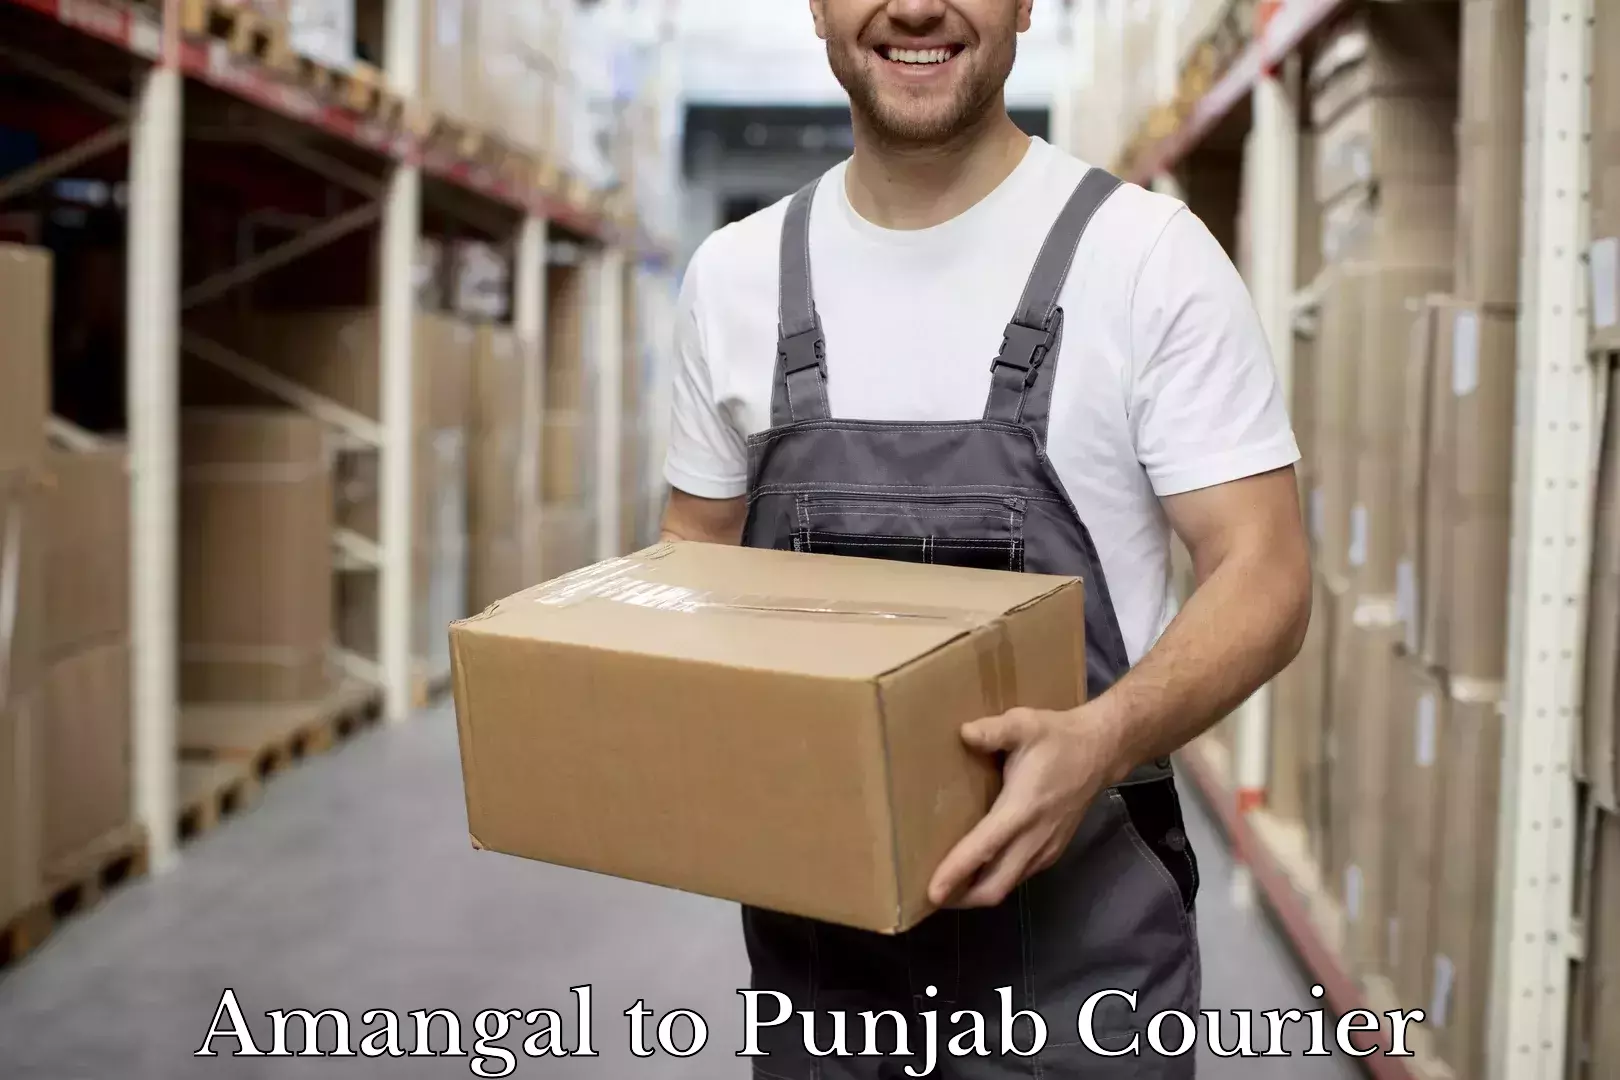 Luggage delivery network Amangal to Central University of Punjab Bathinda